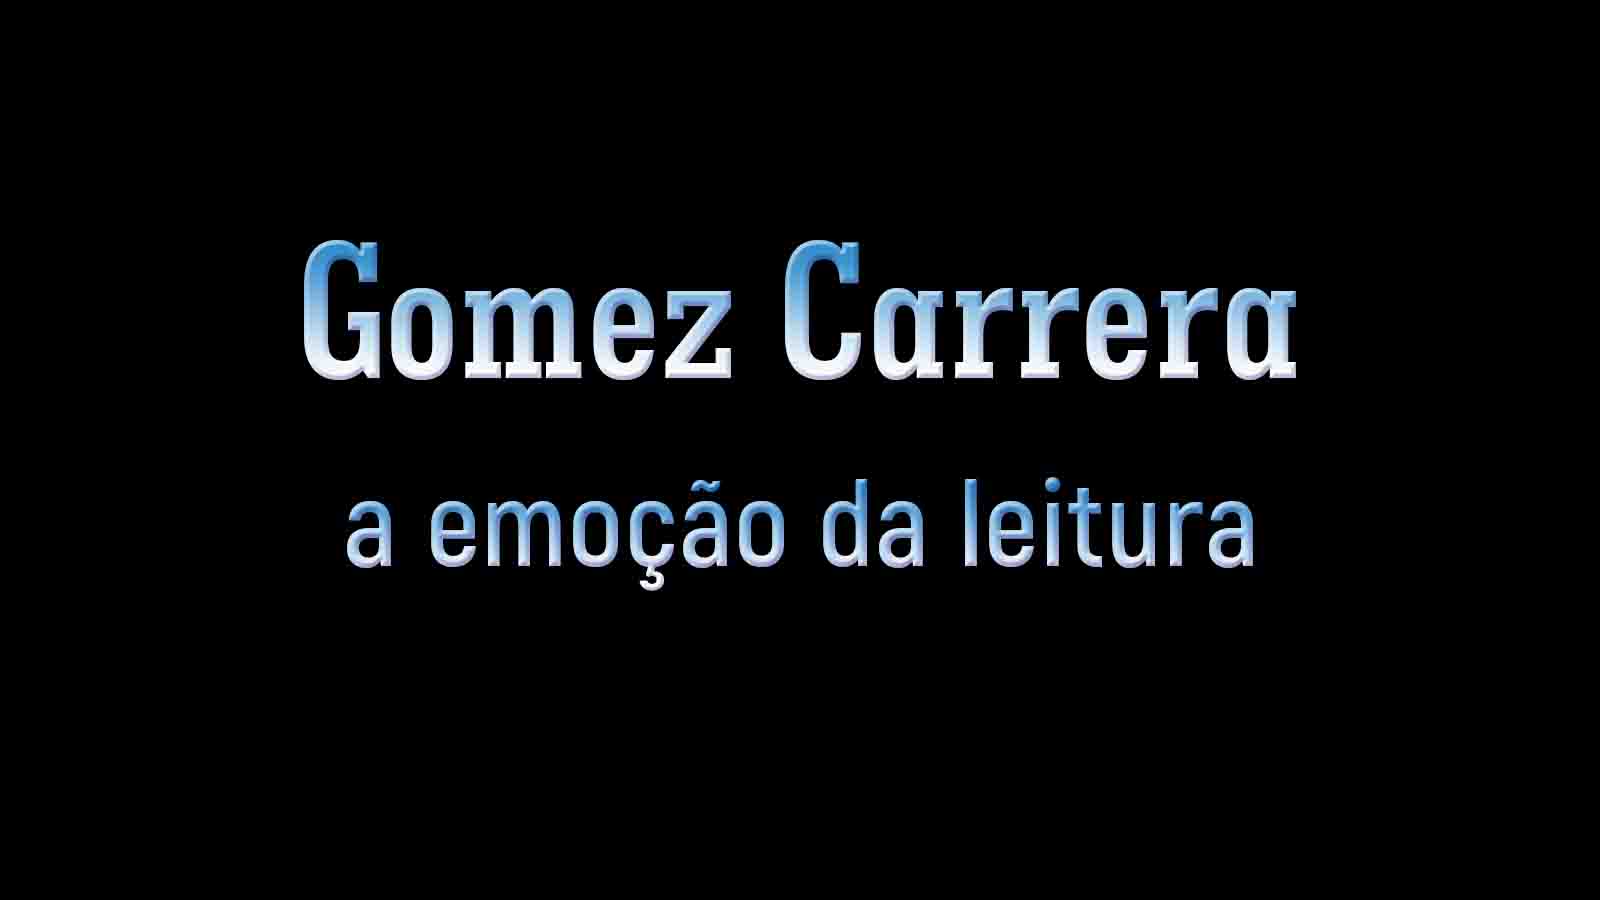 Logotipo Gomez Carrera sobre fundo preto